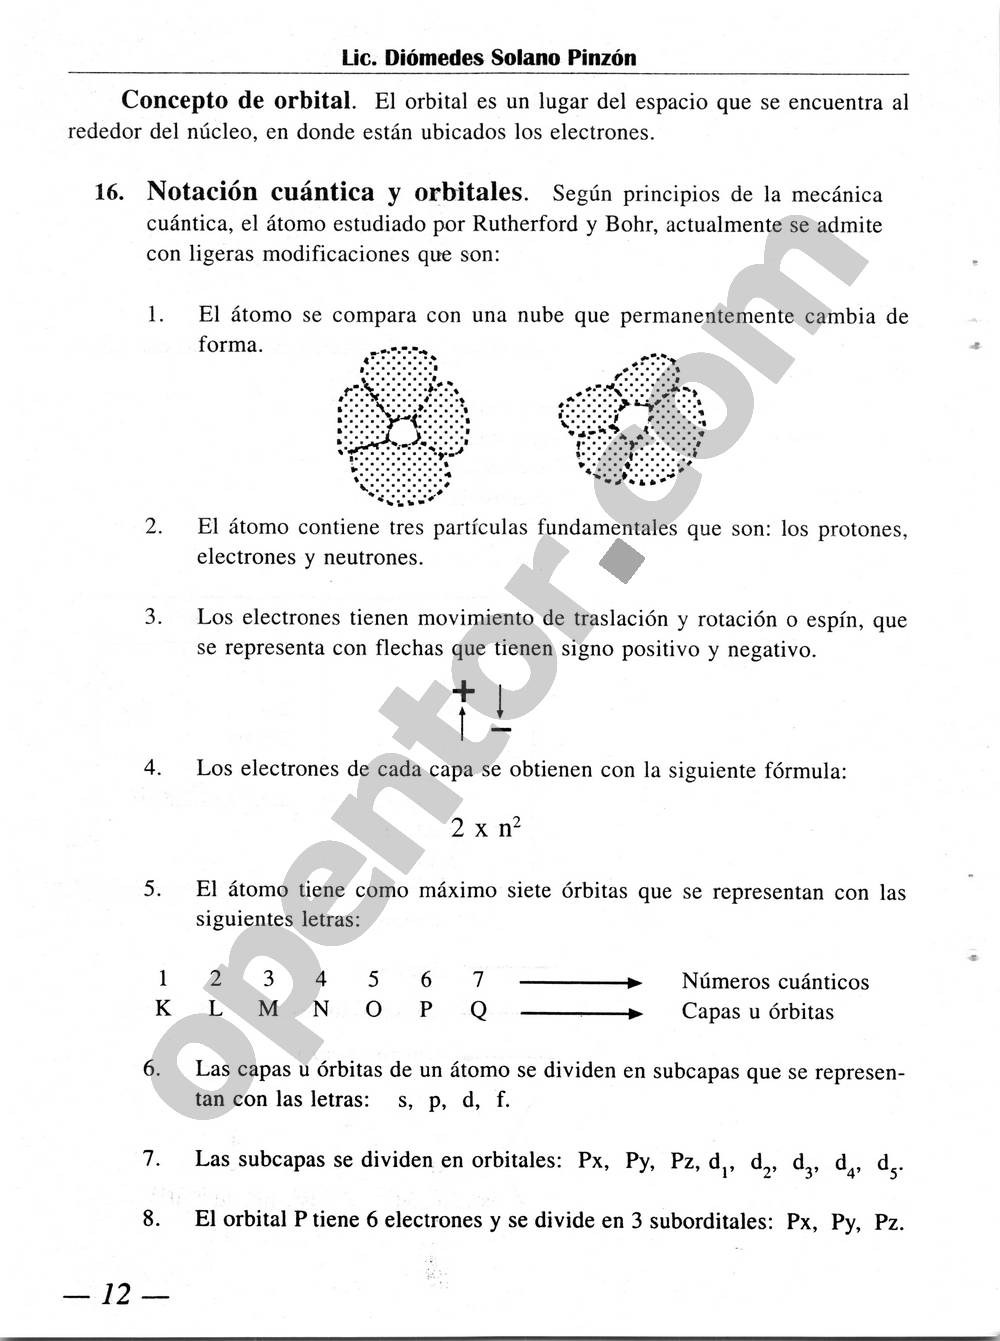 Química Simplificada de Diómedes Solano - Página 12